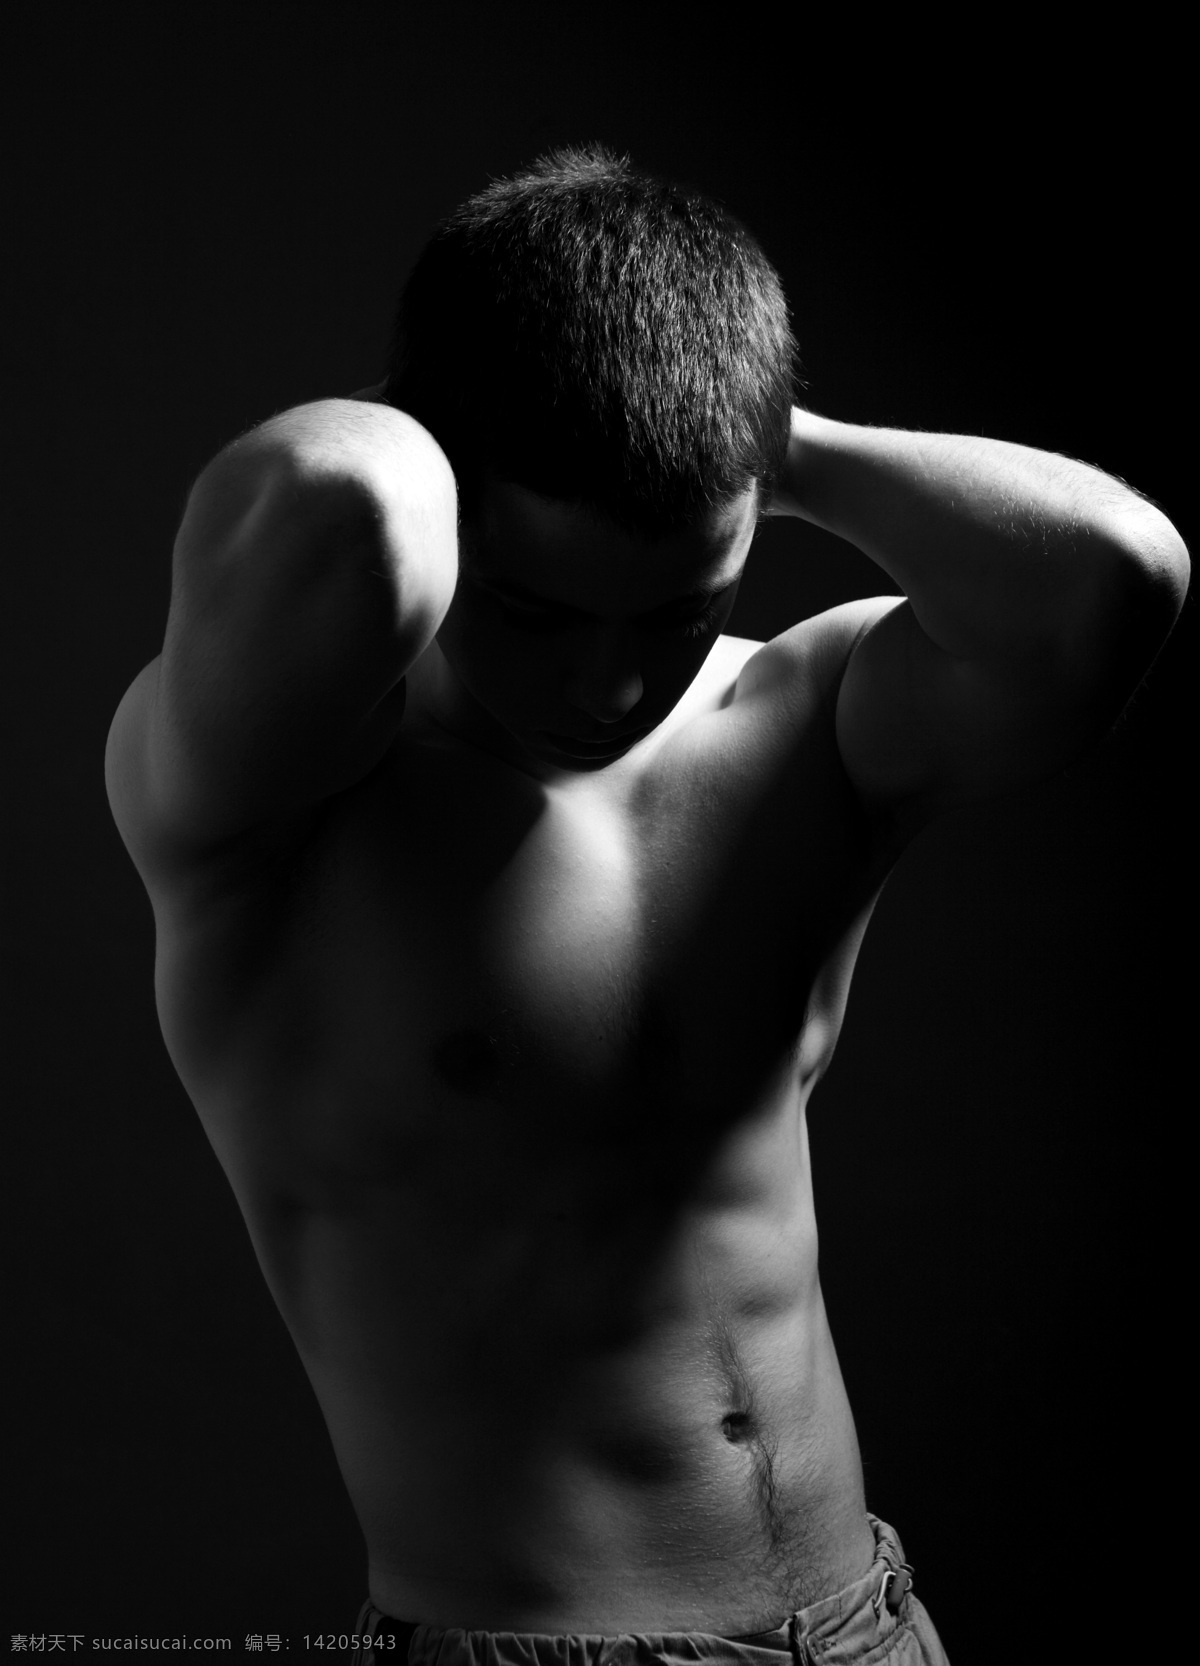 手 抱头 肌肉 男 健美图片 竖构图 黑白 肌肉男 人物 男人 强壮 腹肌 健康 锻炼 强身健体 展示肌肉 手势 低头 练功房 练身房 运动 健美 教练 模特 高清图片 男人图片 人物图片